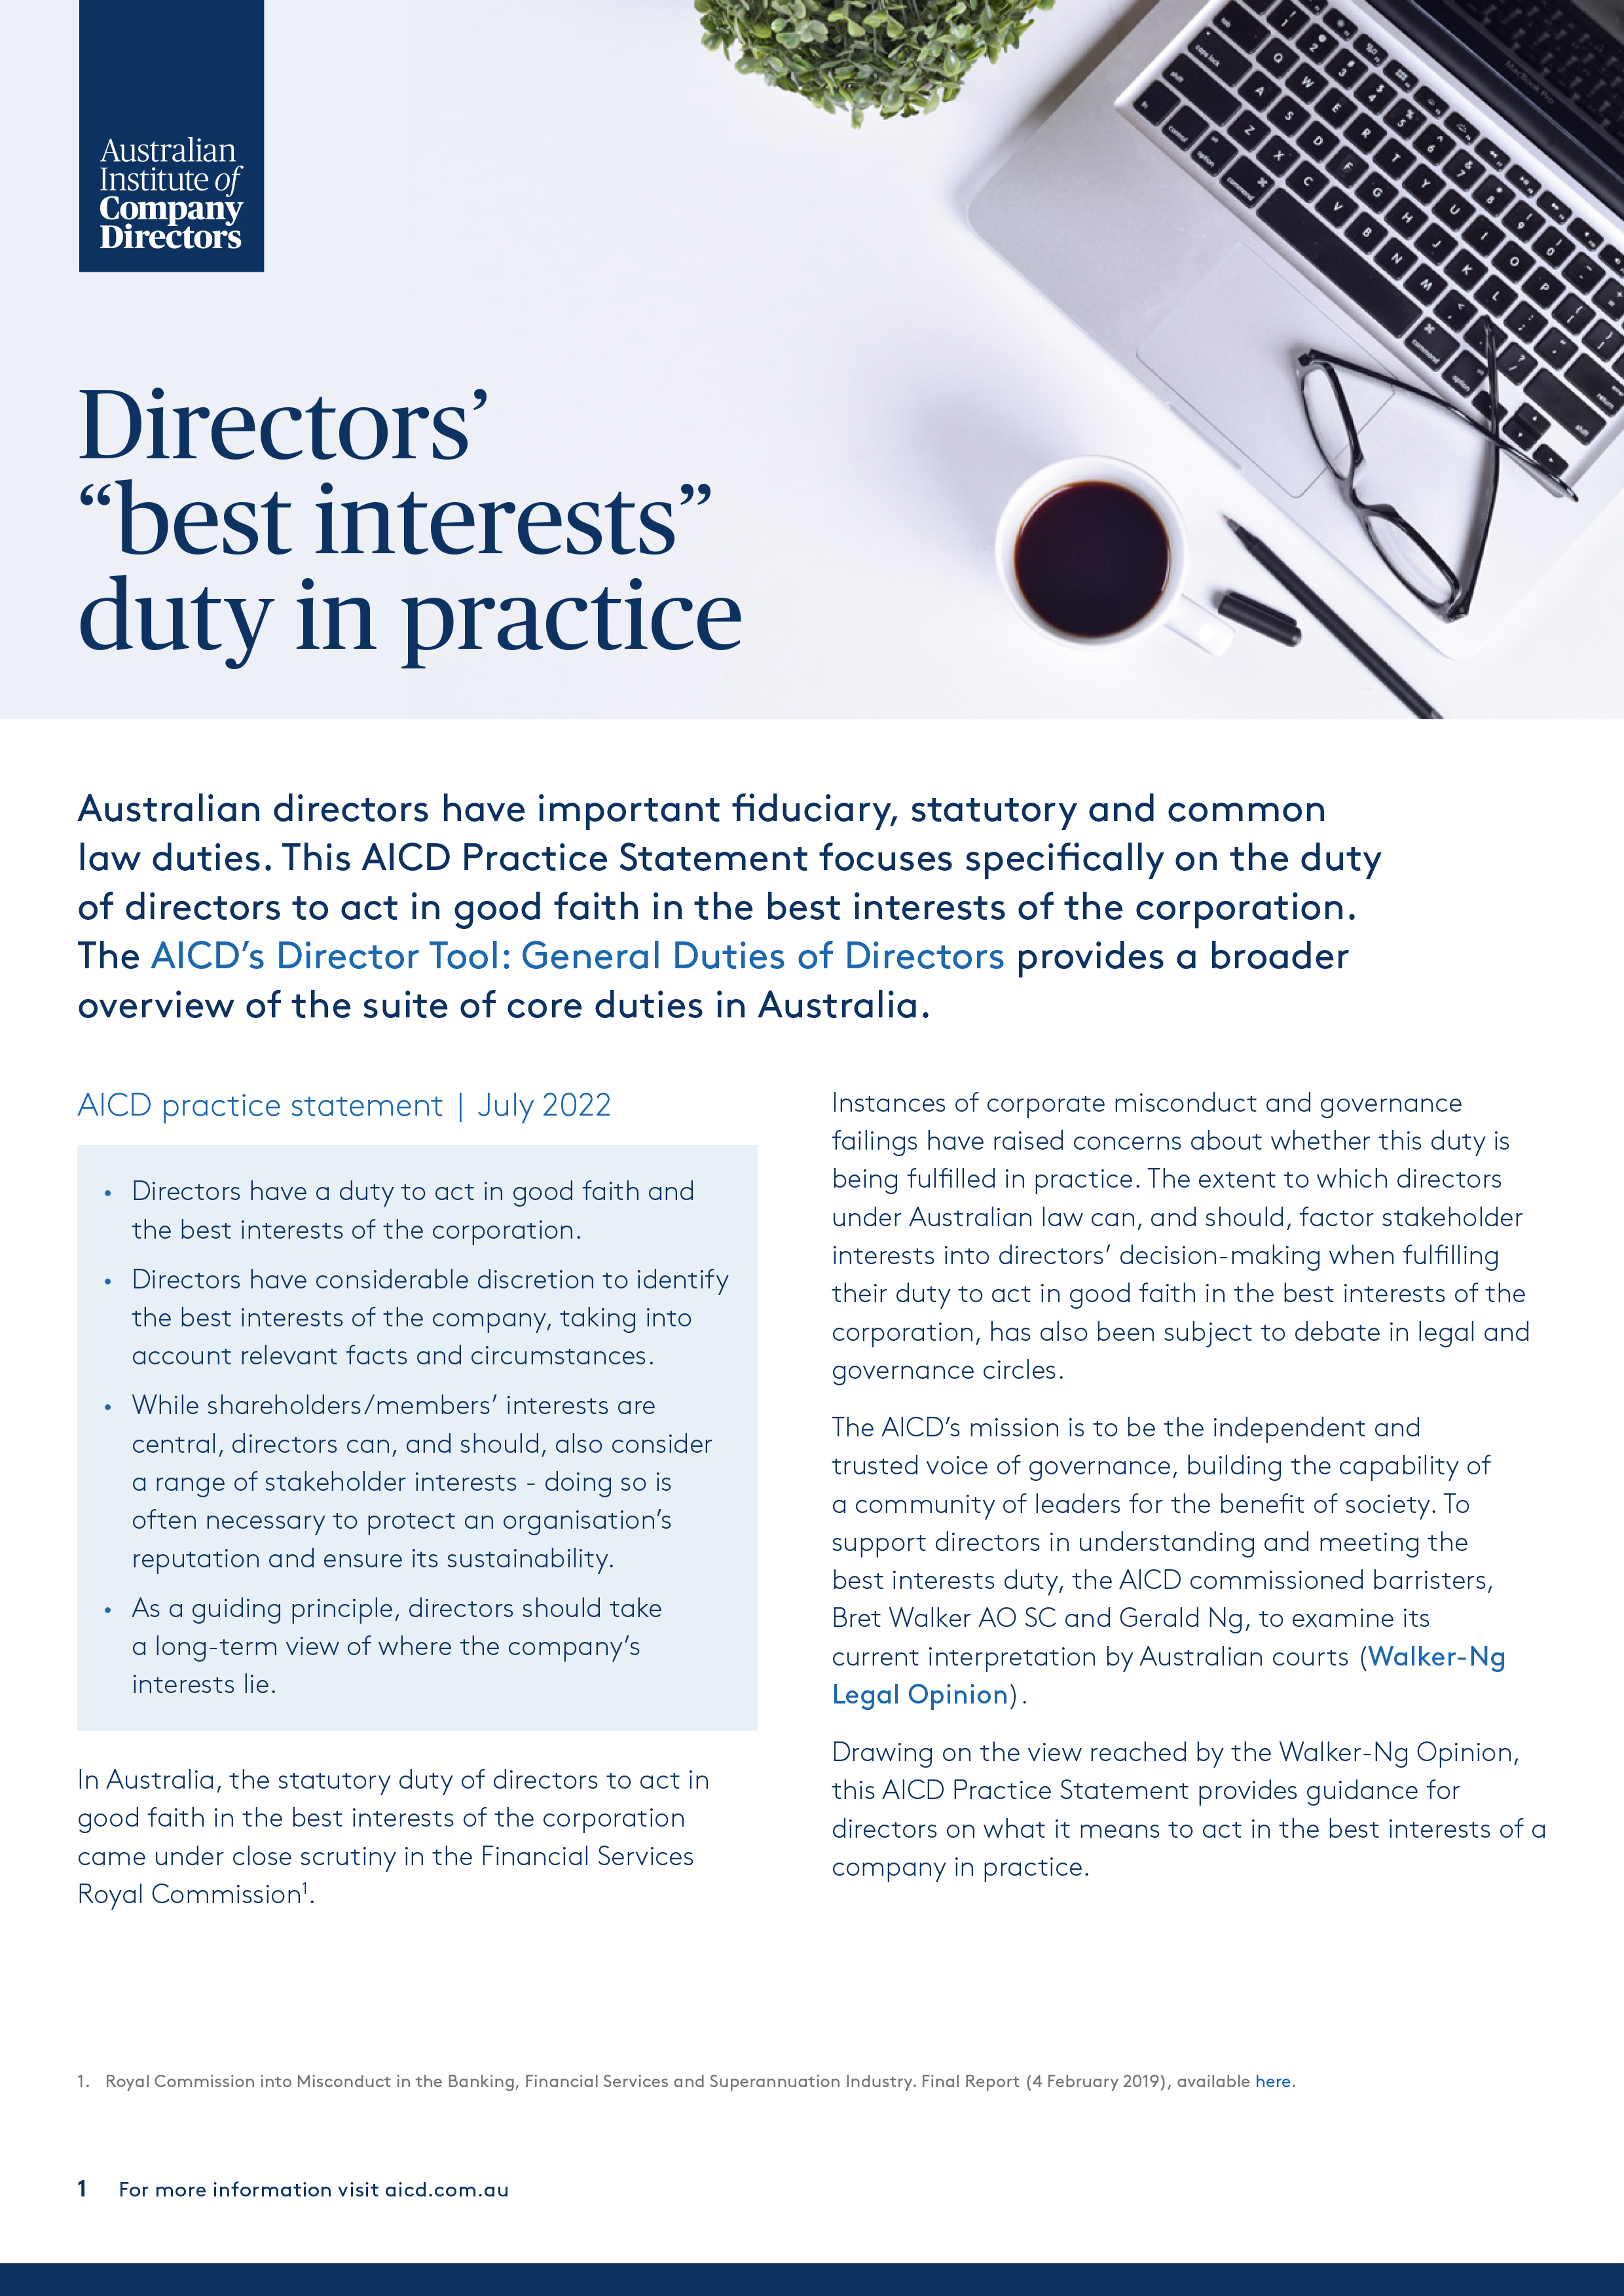 Directors' "Best Interests" Duty